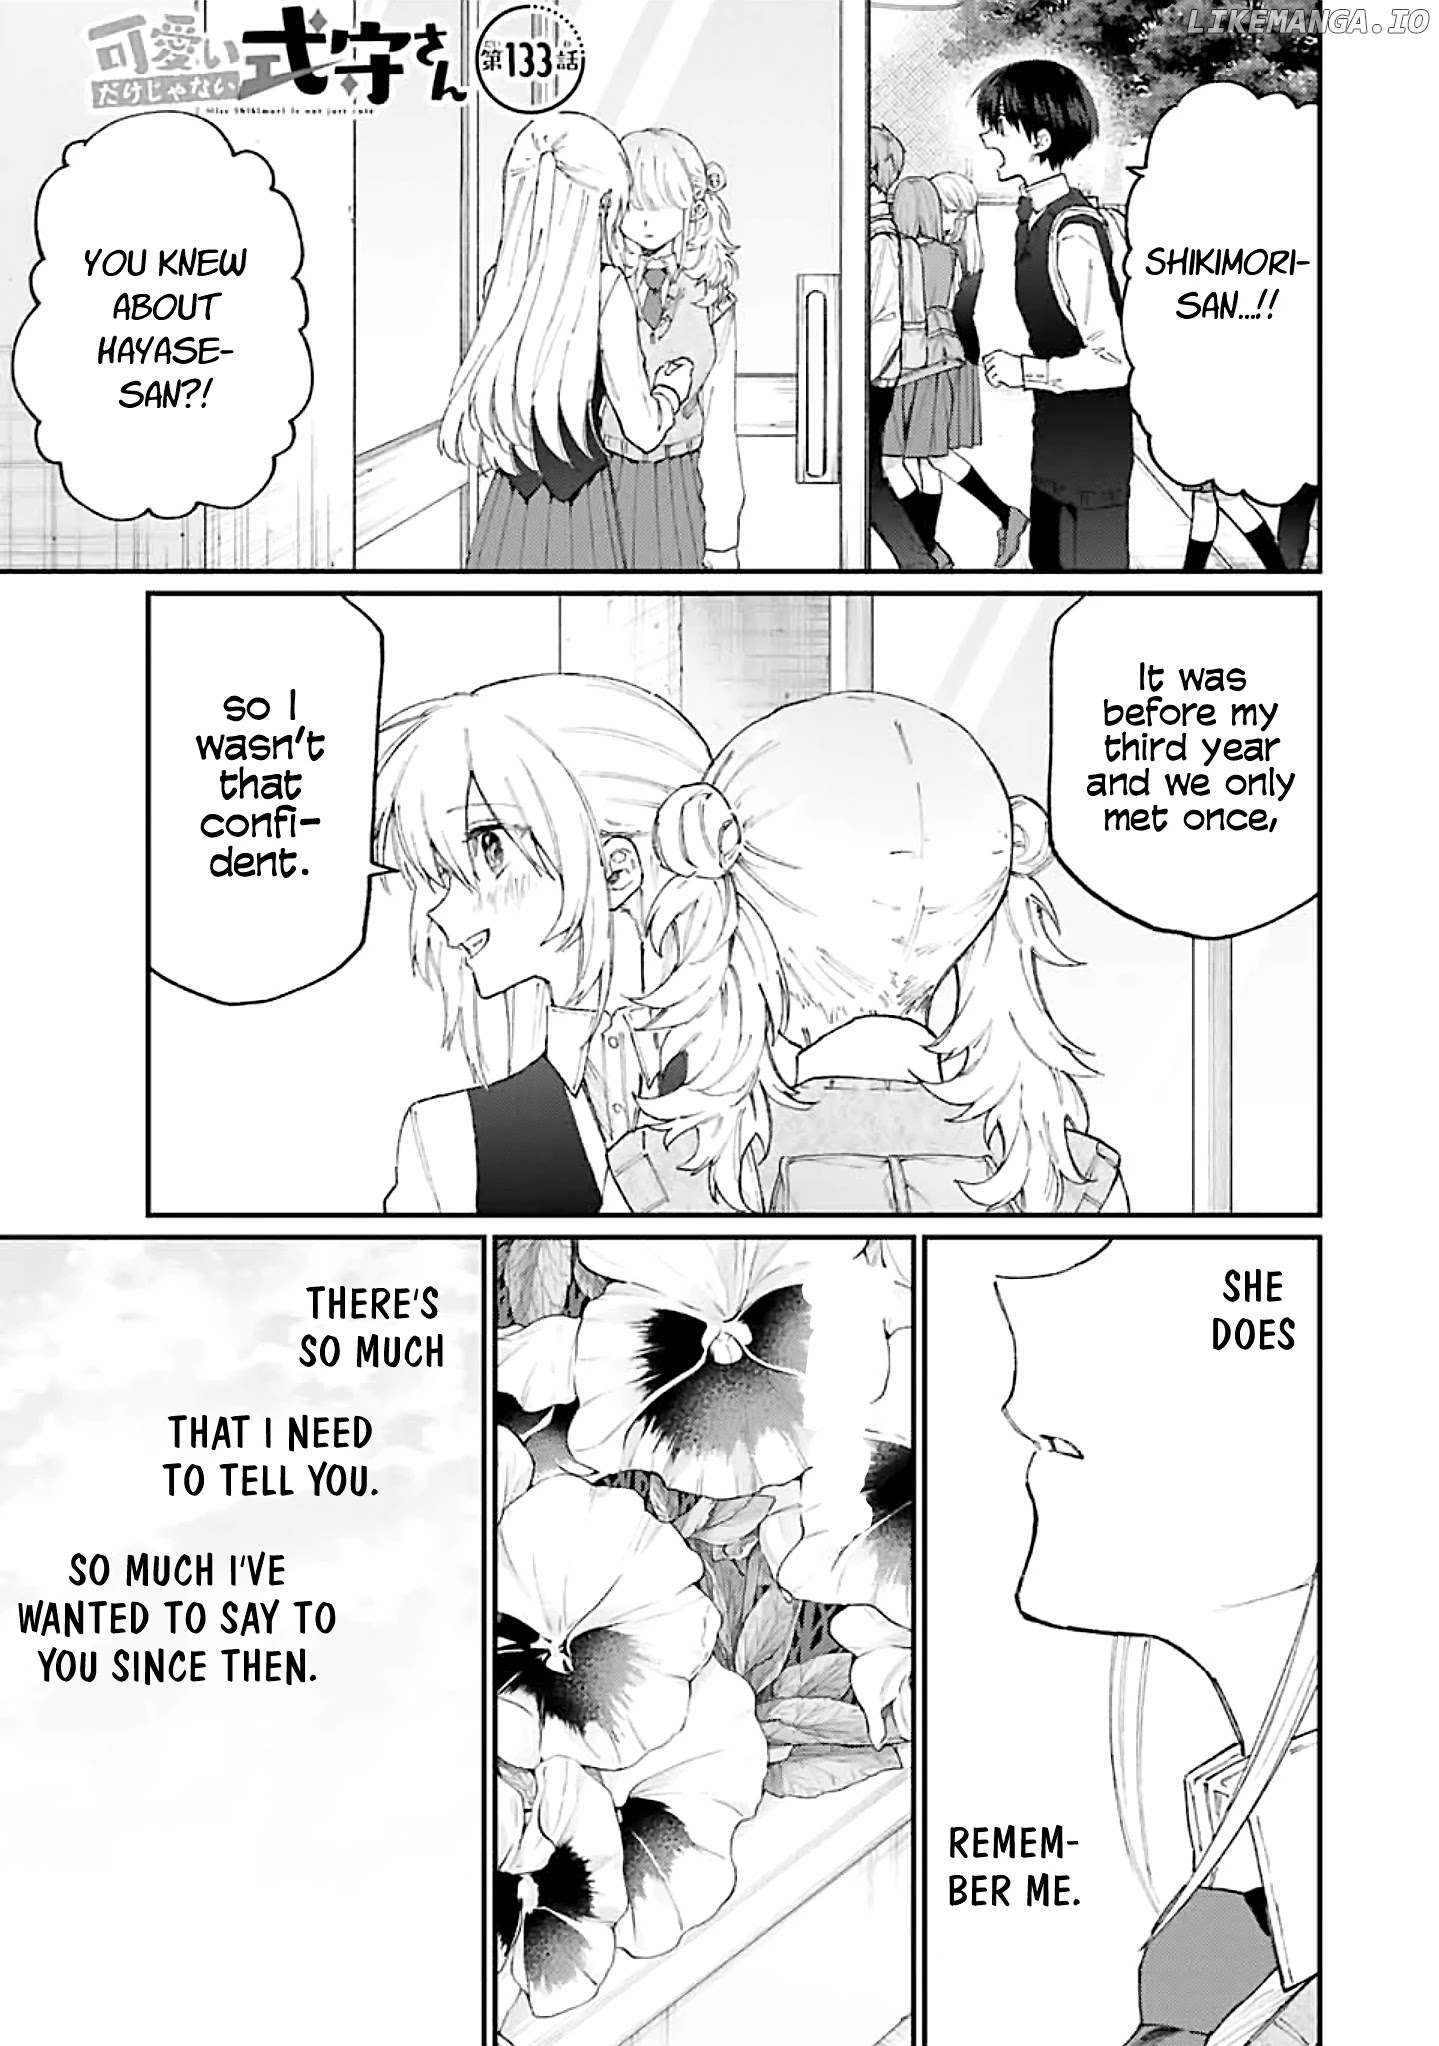 Shikimori's Not Just A Cutie chapter 133 - page 1